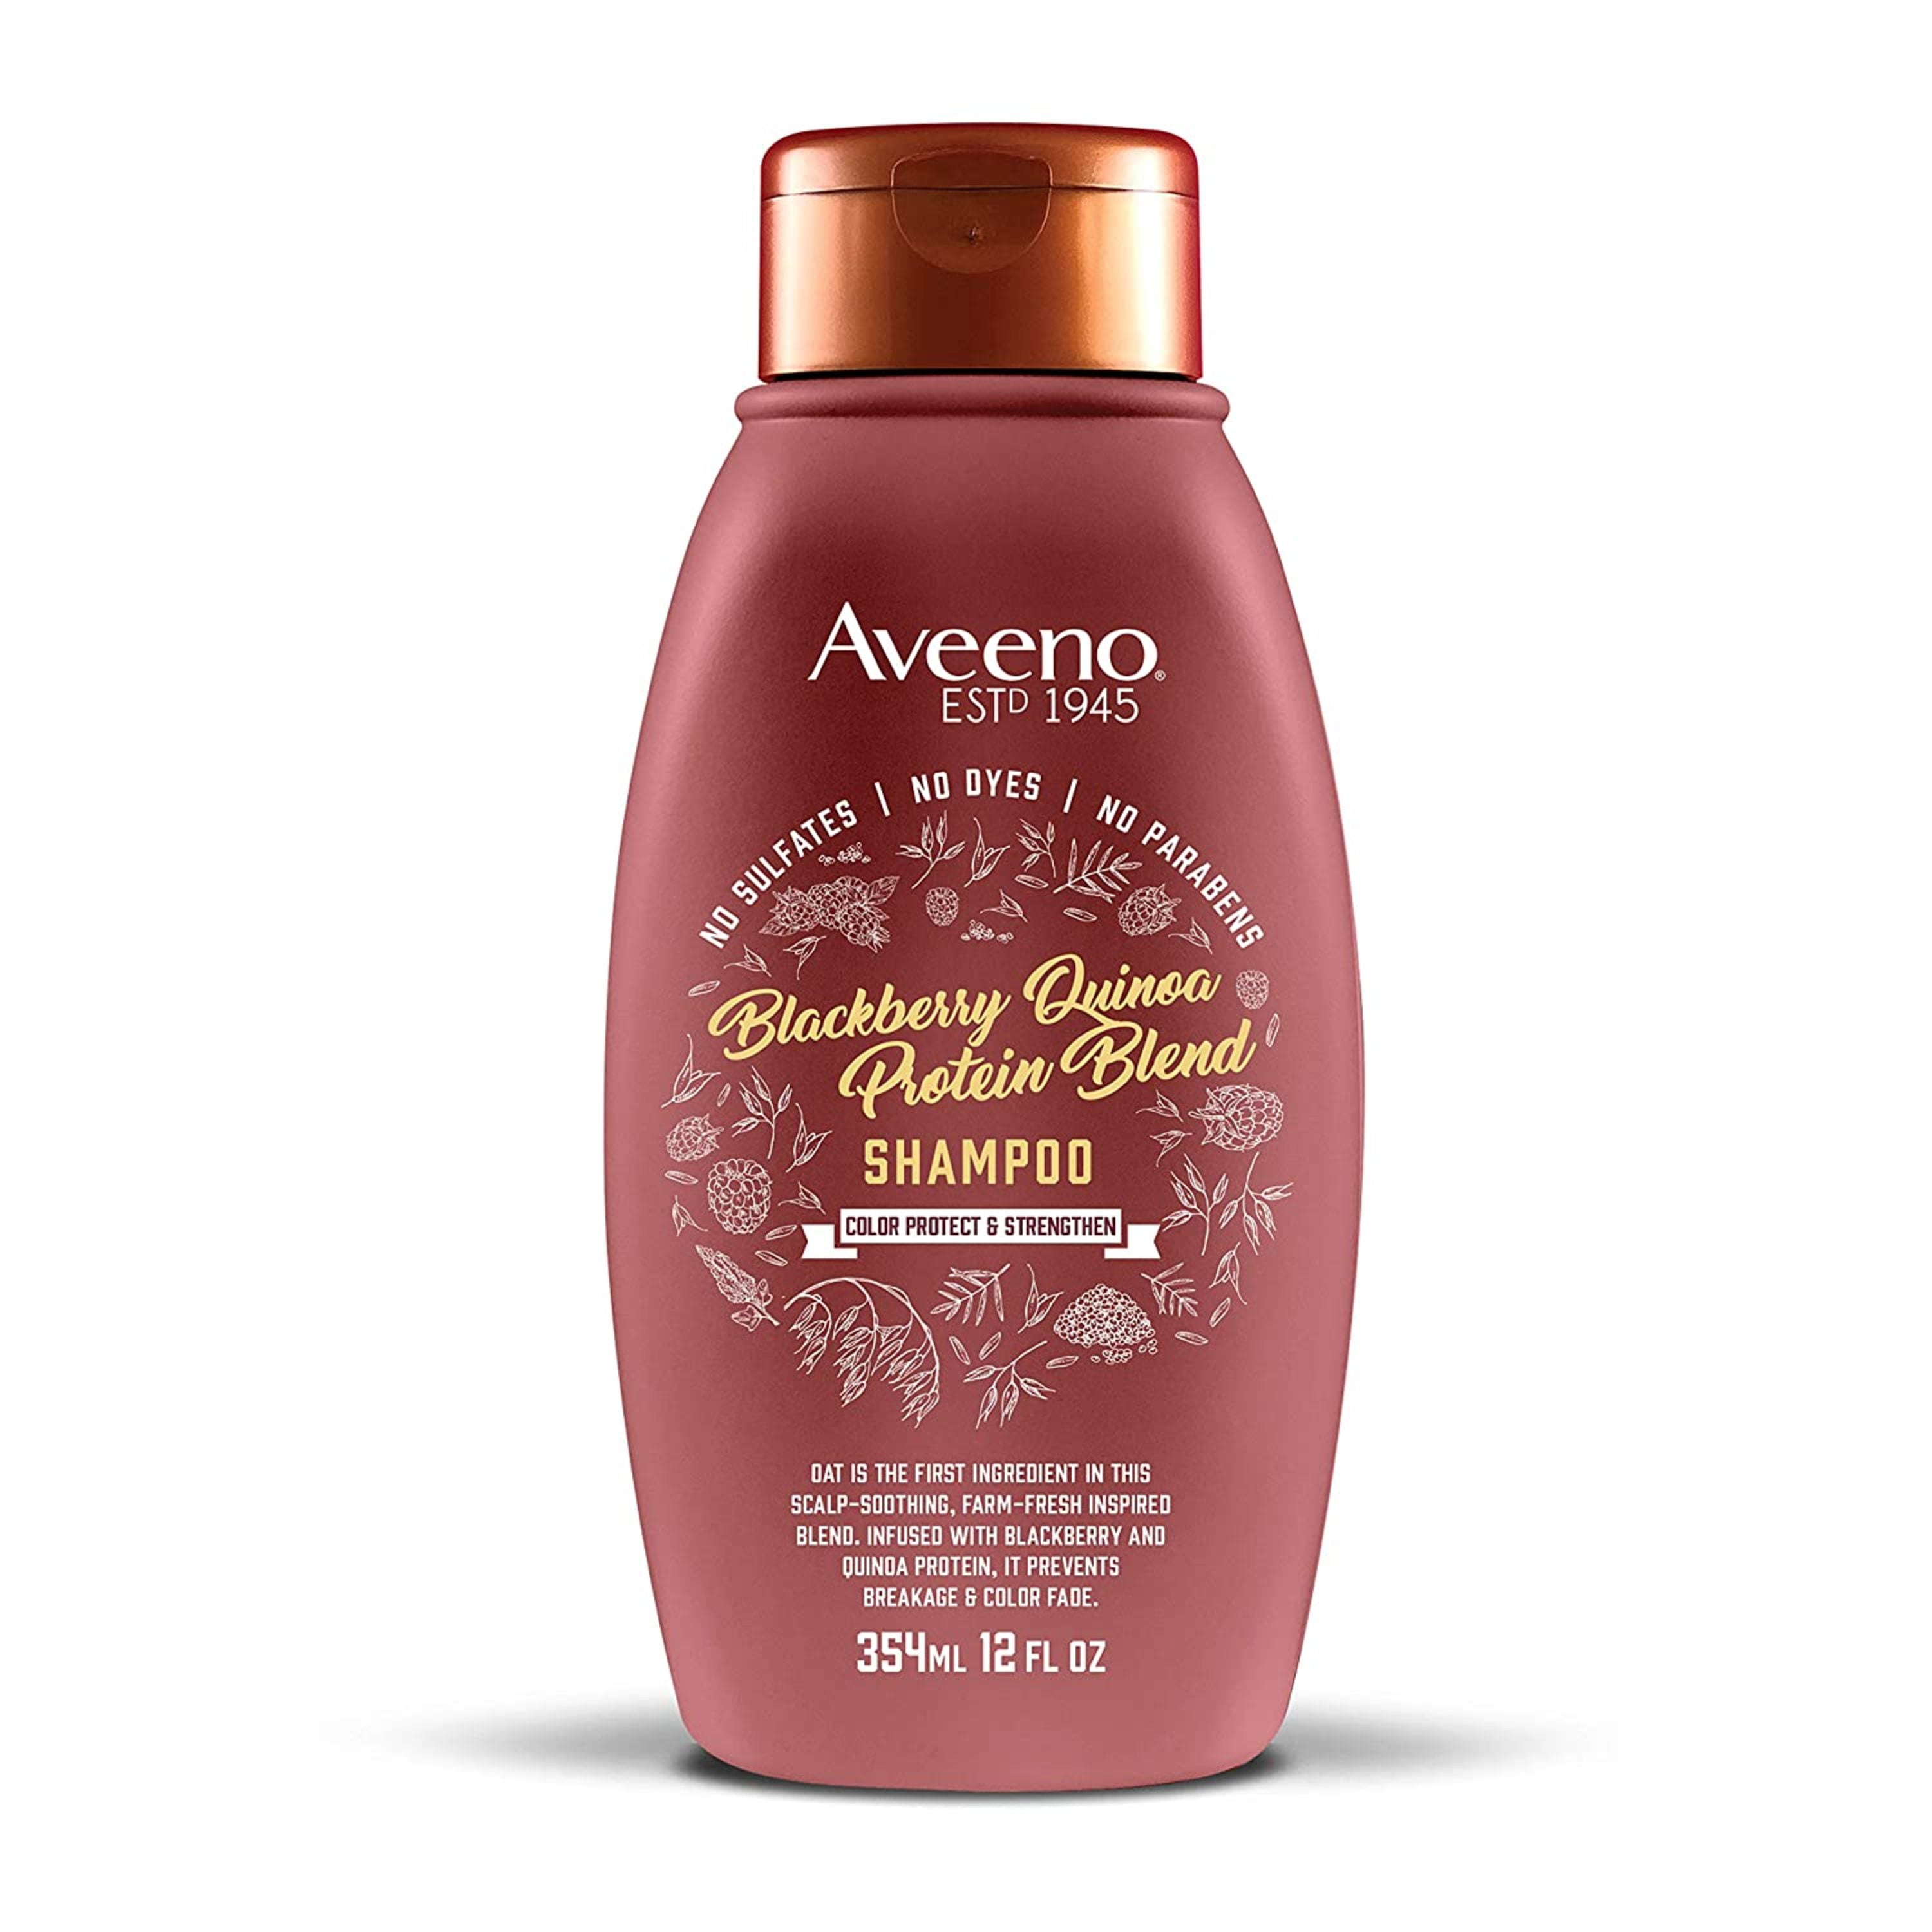 Aveeno Blackberry Quinoa Protein Blend Shampoo, 12 fl. oz